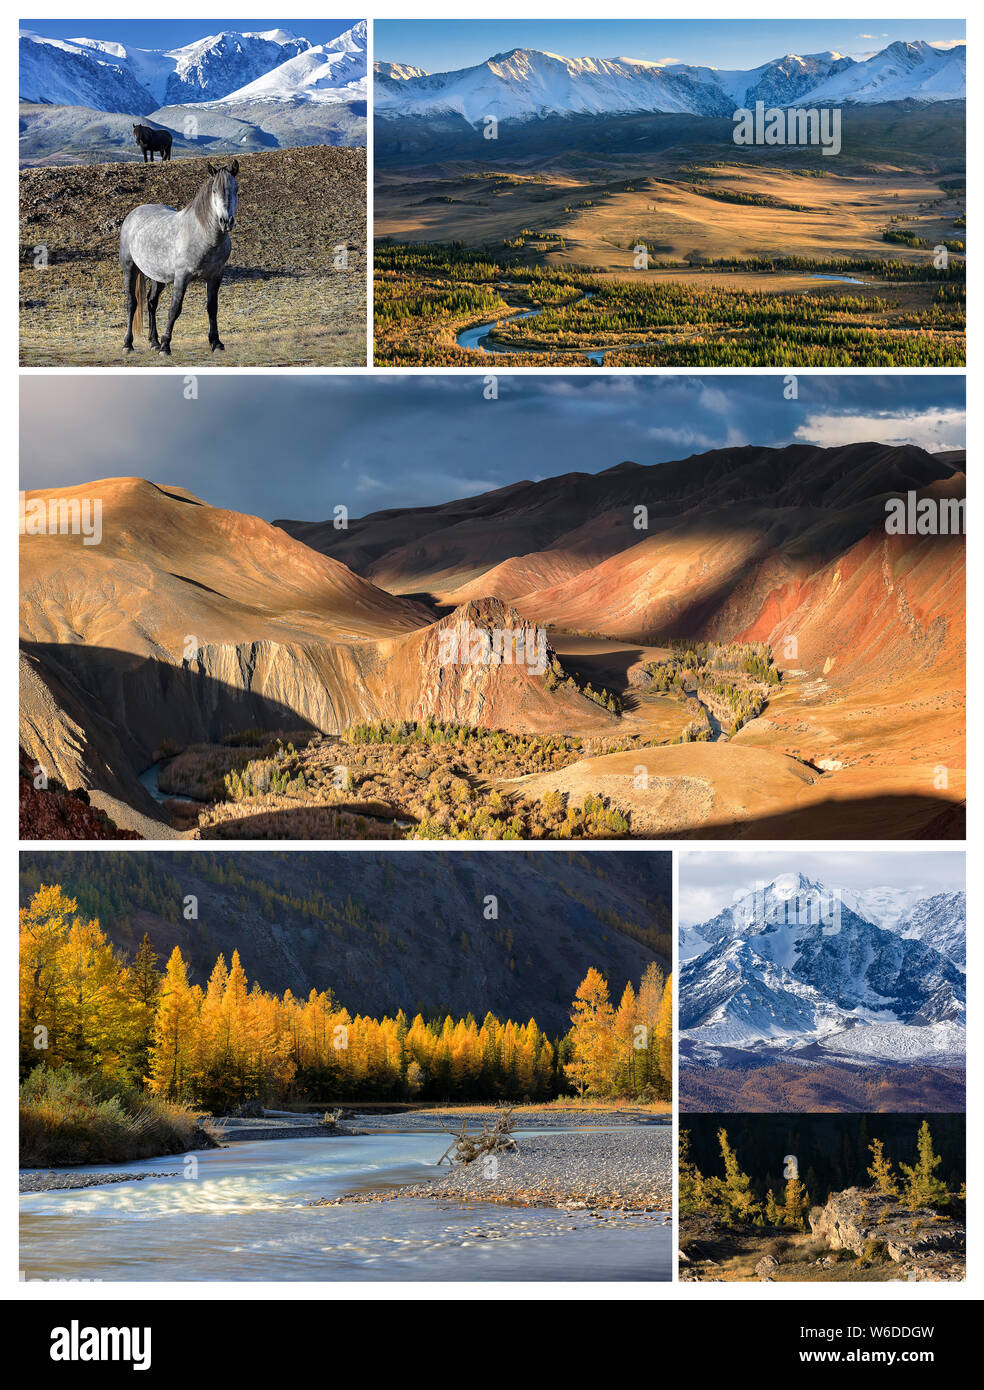 Collage de fotos. Paisaje otoñal con el norte de Chuya montañas Kyzylshin Ridge, Valle del río y las montañas de Altai, caballos salvajes y alerces Foto de stock